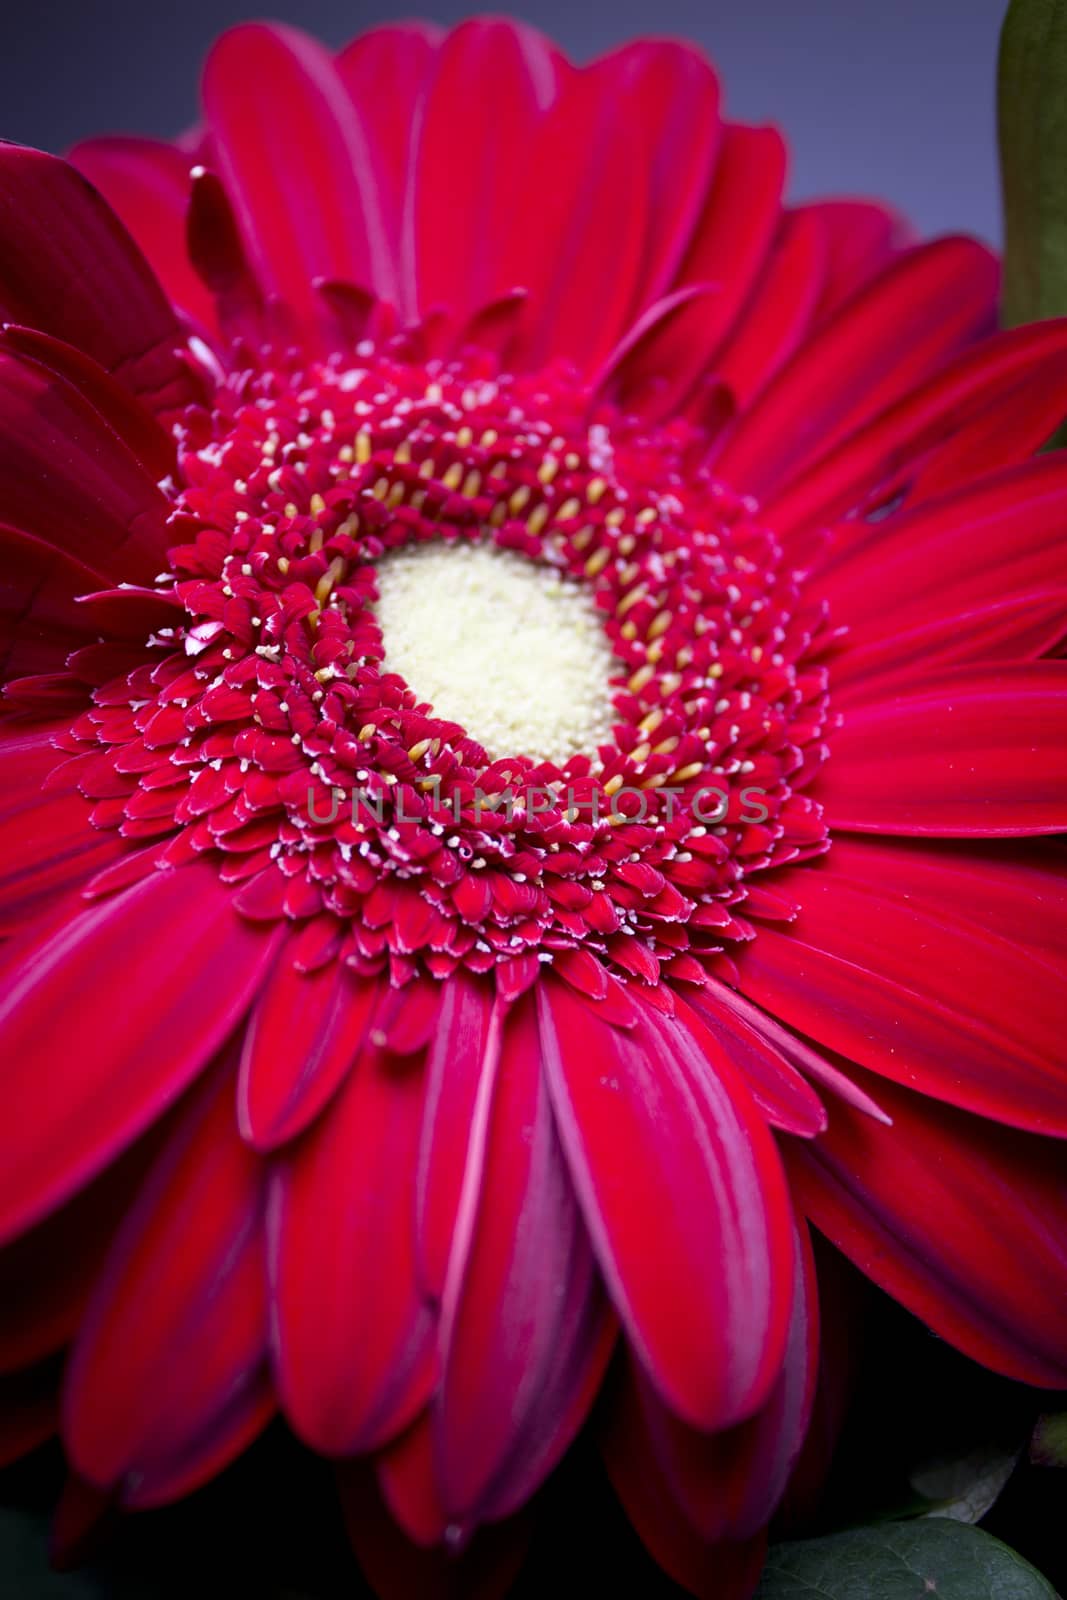 Red big daisy flower by GemaIbarra